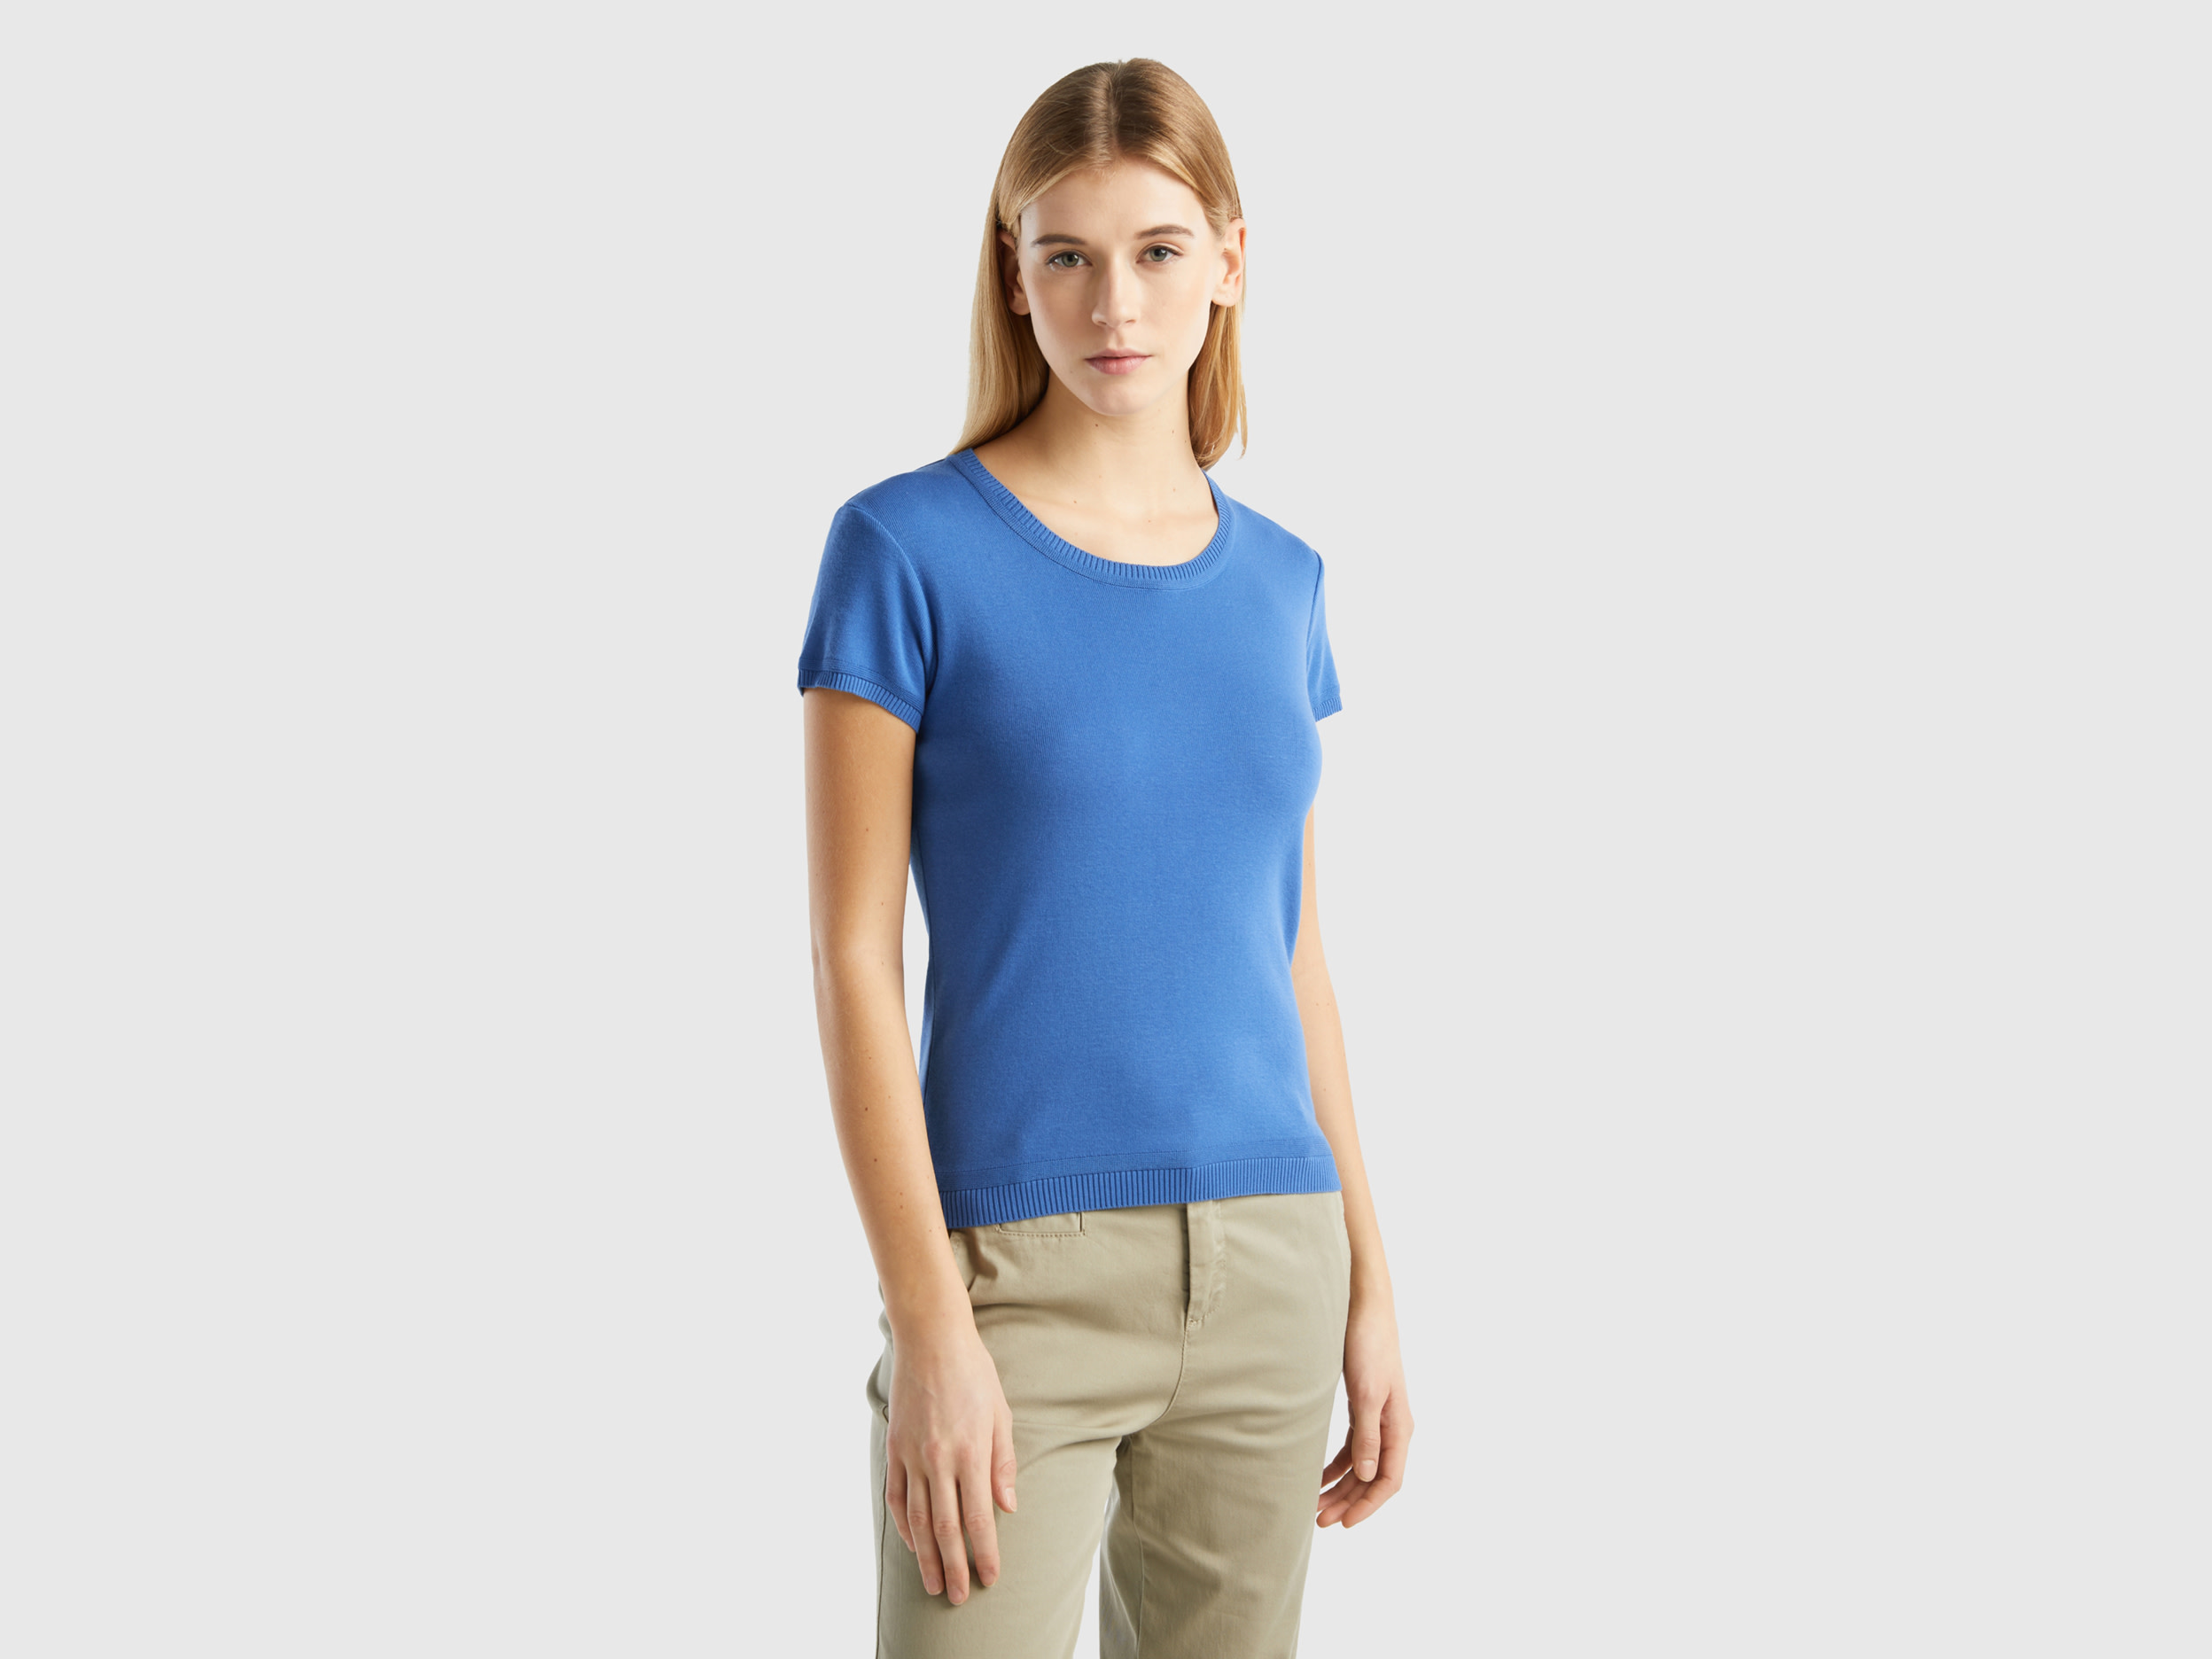 Benetton, Short Sleeve Sweater In 100% Cotton, size L, Blue, Women